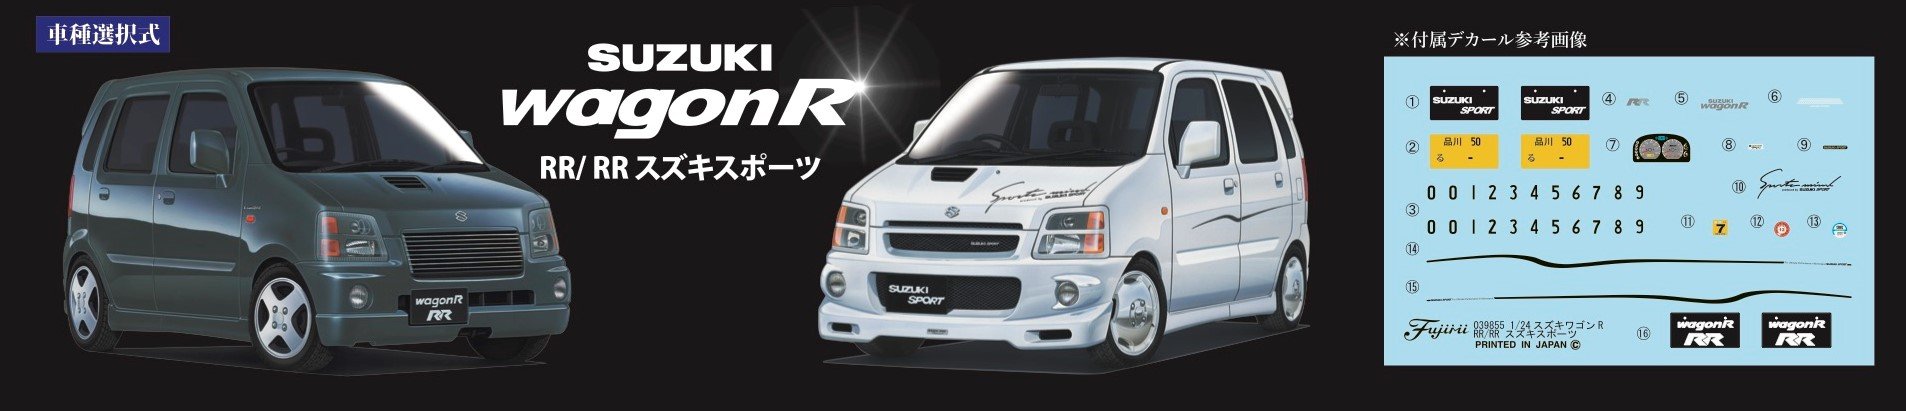 FUJIMI Id-45 Suzuki Wagon R Rr / Rr Suzuki Sports Bausatz im Maßstab 1/24